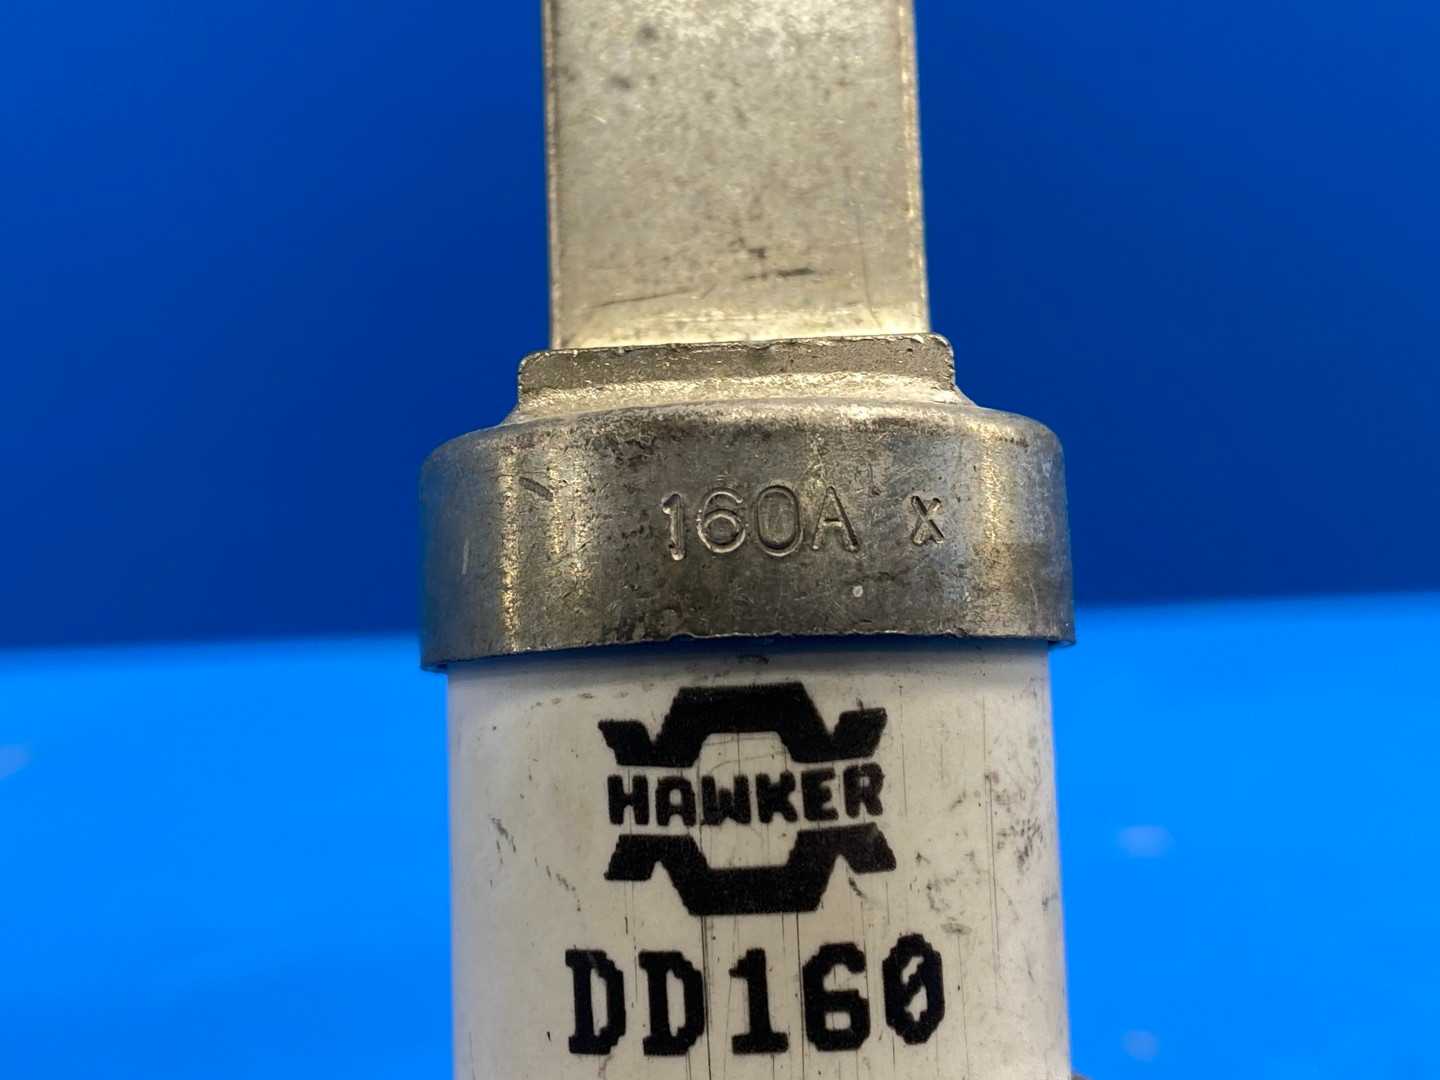 Hawker DD160 fuse